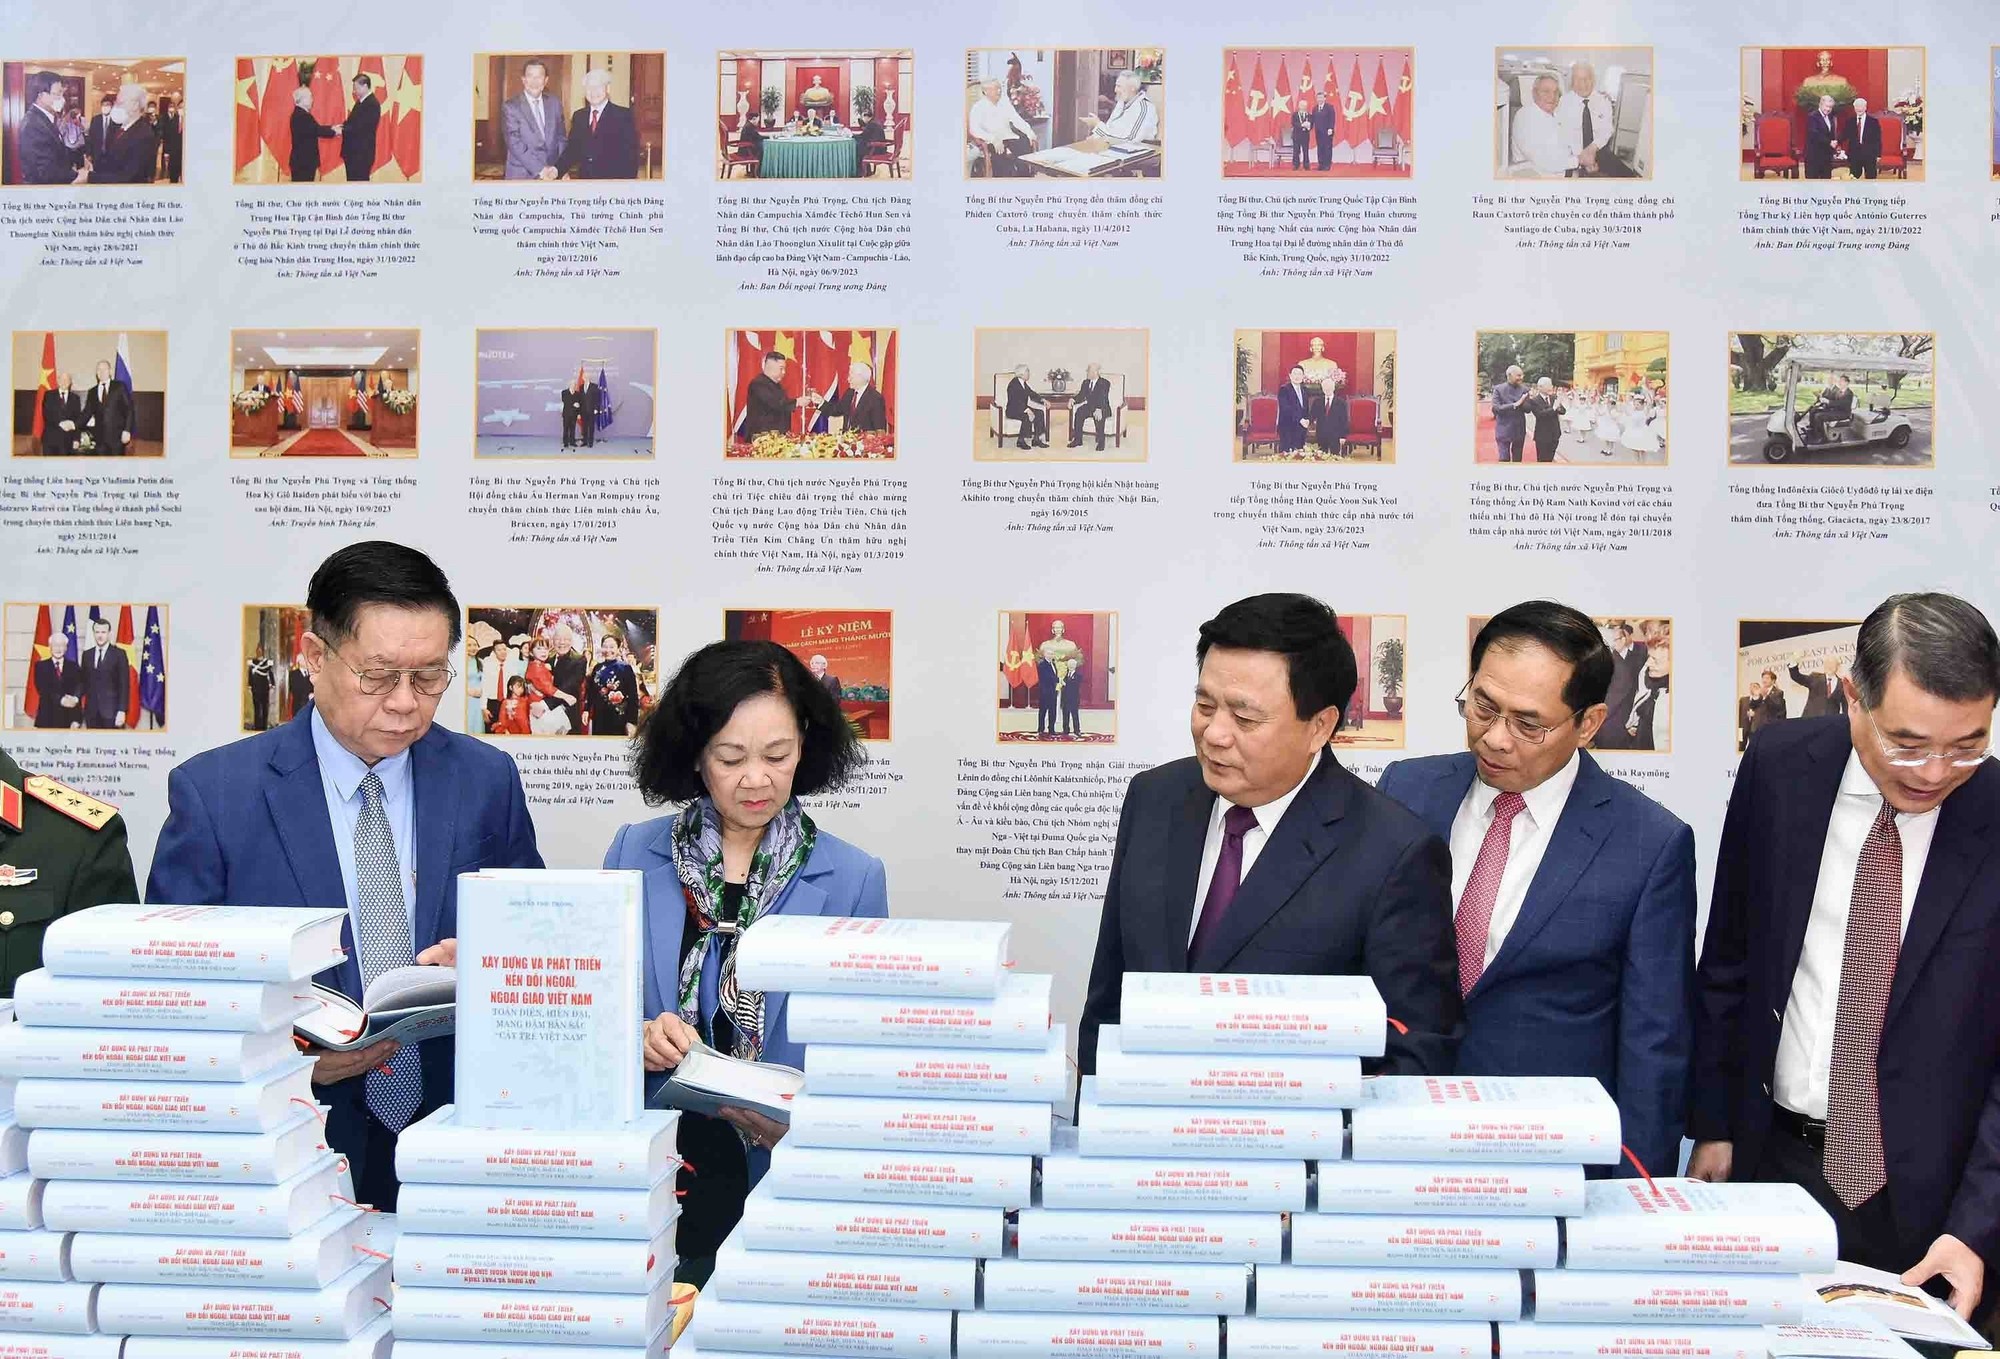 Ra mắt sách của Tổng Bí thư về đối ngoại, ngoại giao Việt Nam- Ảnh 3.